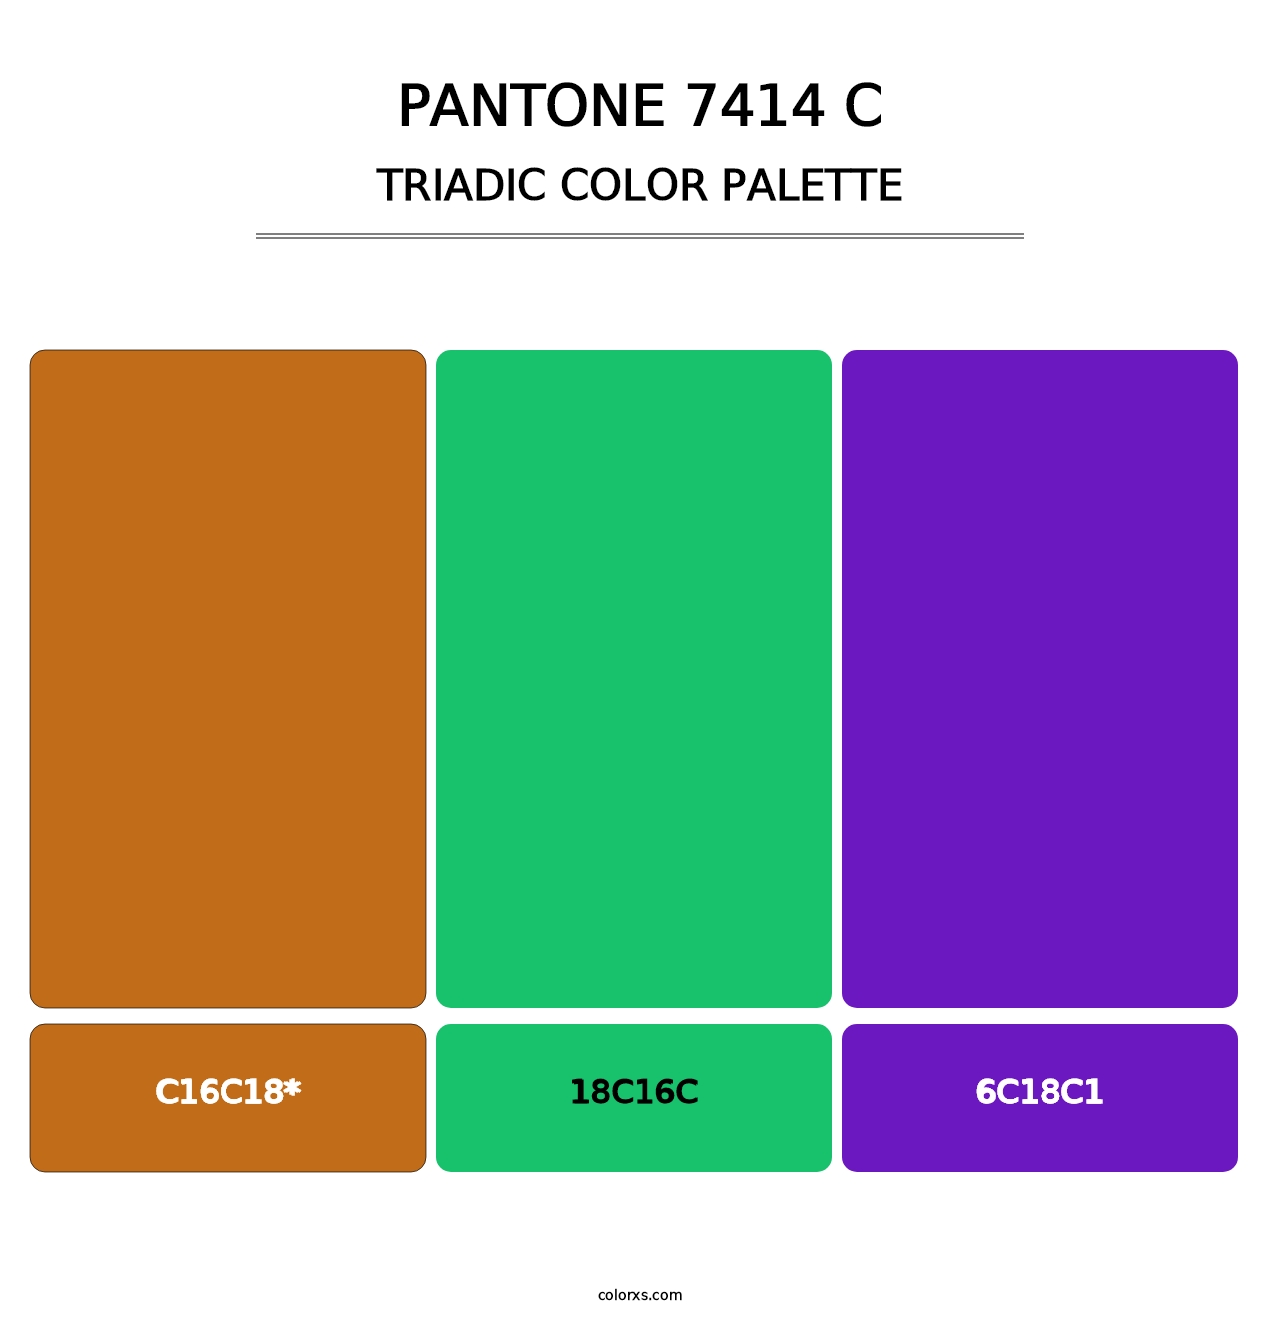 PANTONE 7414 C - Triadic Color Palette